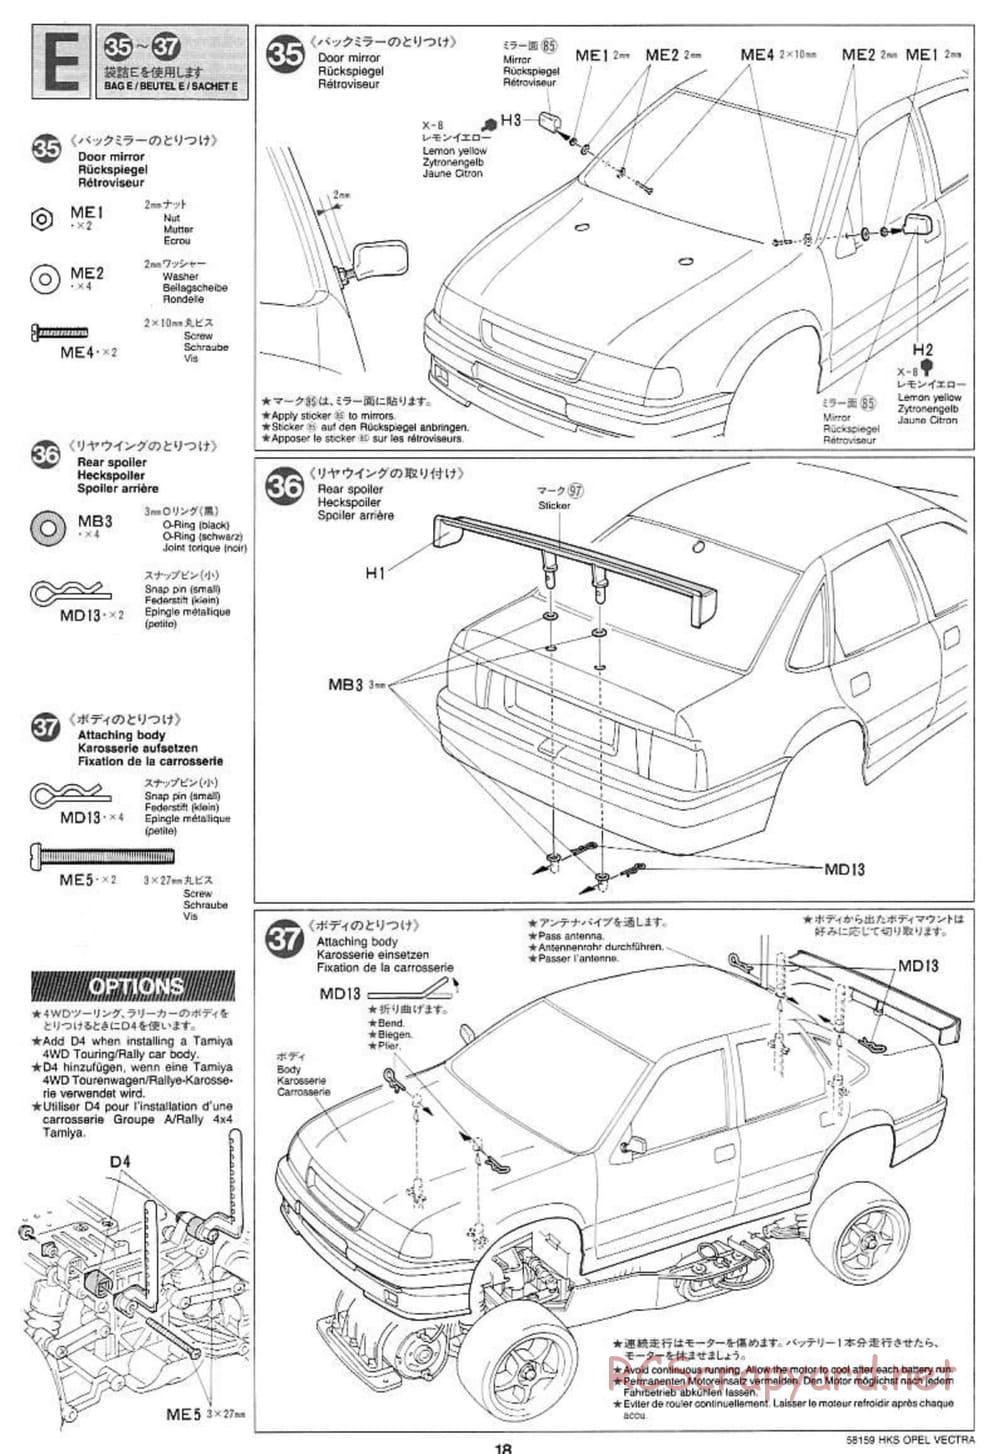 Tamiya - HKS Opel Vectra JTCC - FF-01 Chassis - Manual - Page 18